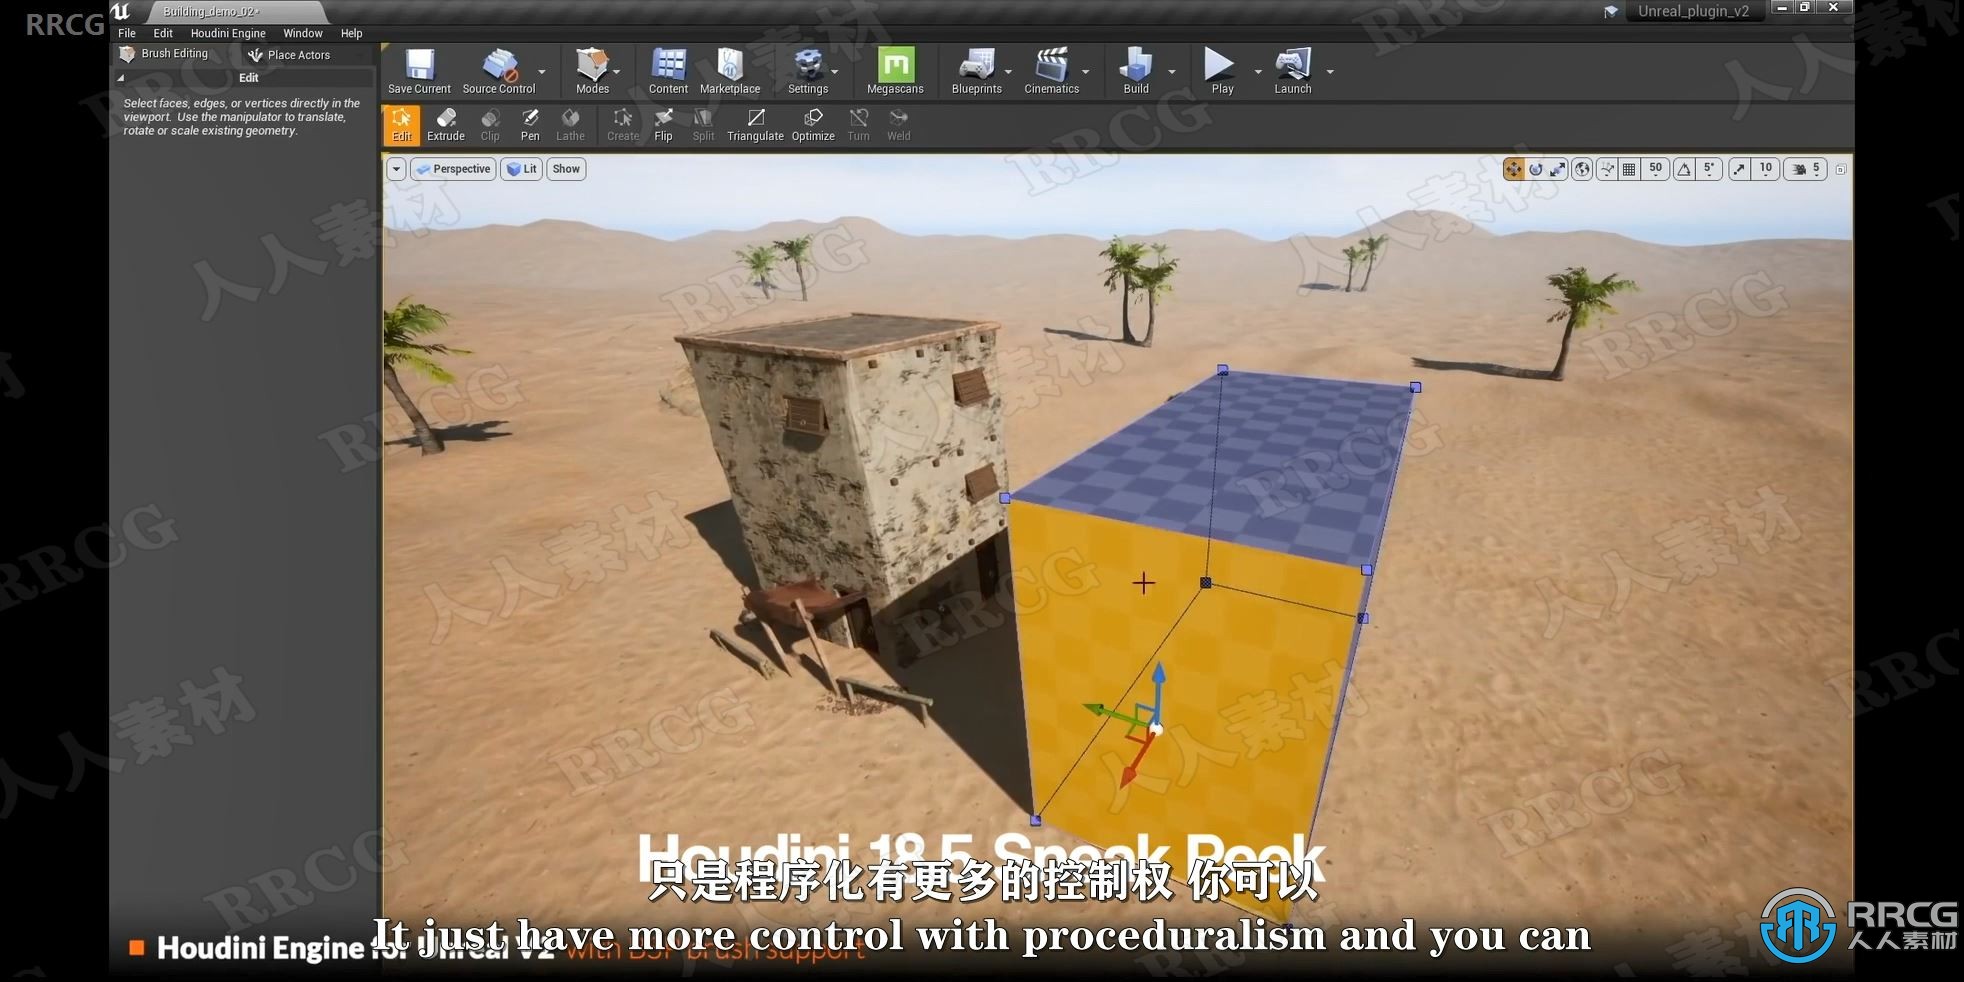 【中文字幕】Blender城堡程序化建模和动画技术视频教程